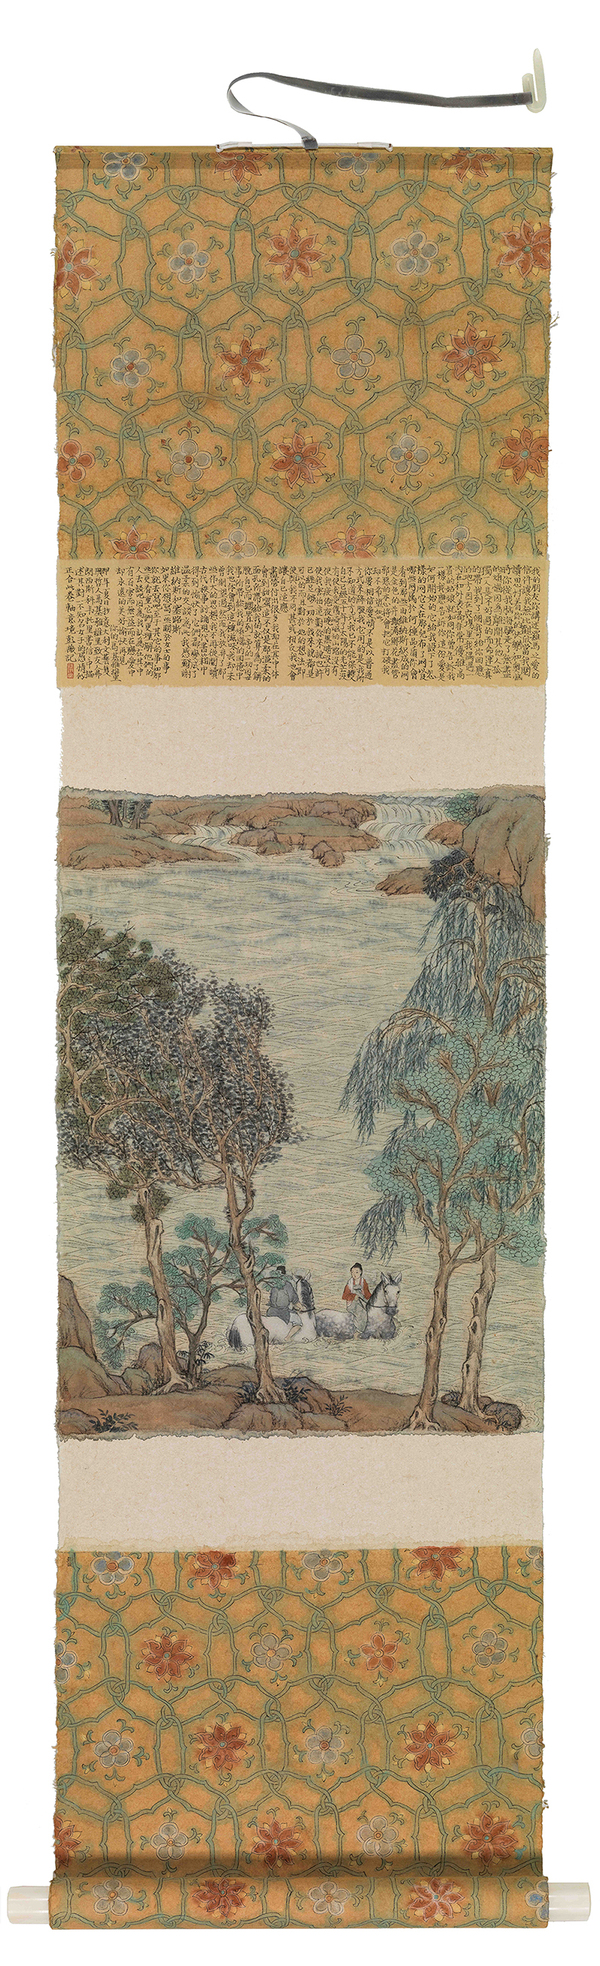 彭薇 《溪岸微风》卷轴- 宣纸水墨  139×38cm  2014   Peng Wei，Letters From A Distance，Ink and wash on paper，139×38cm ，2014